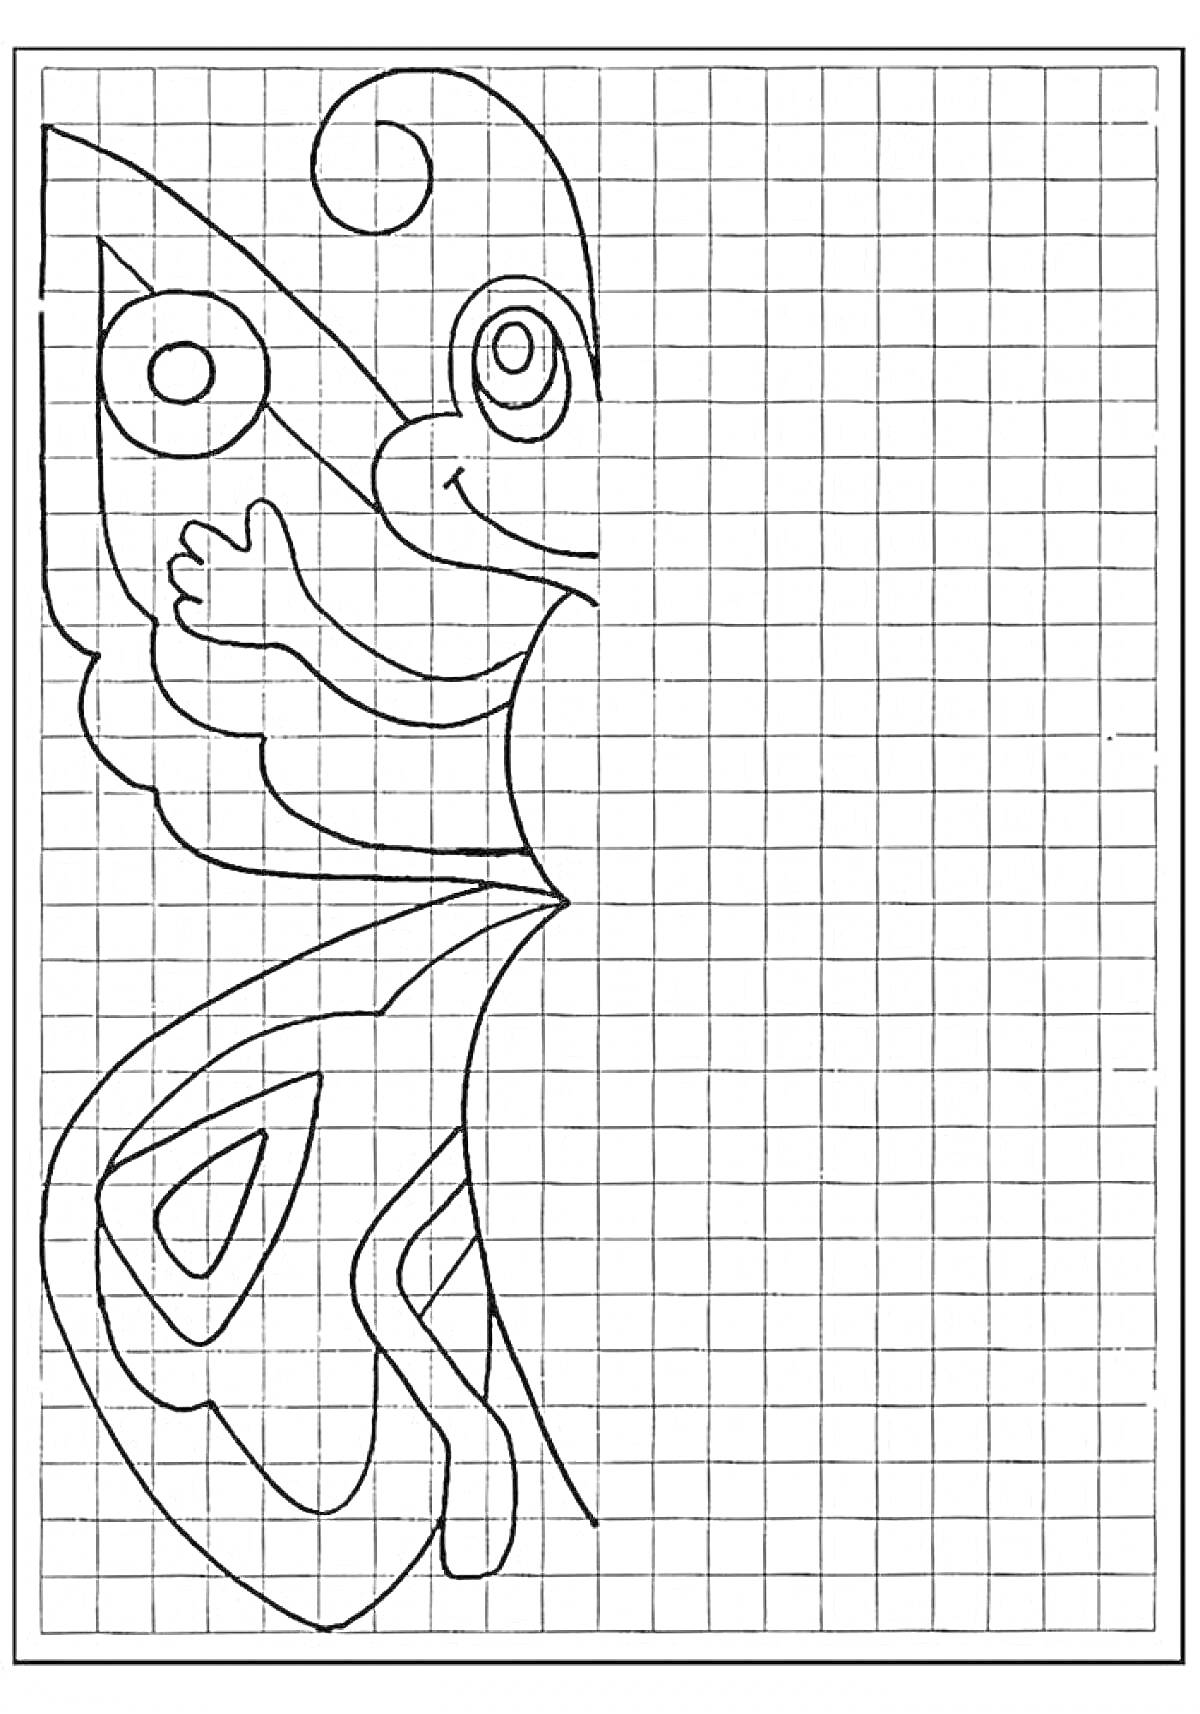 Раскраска Бабочка на сетке с фигурами и линиями